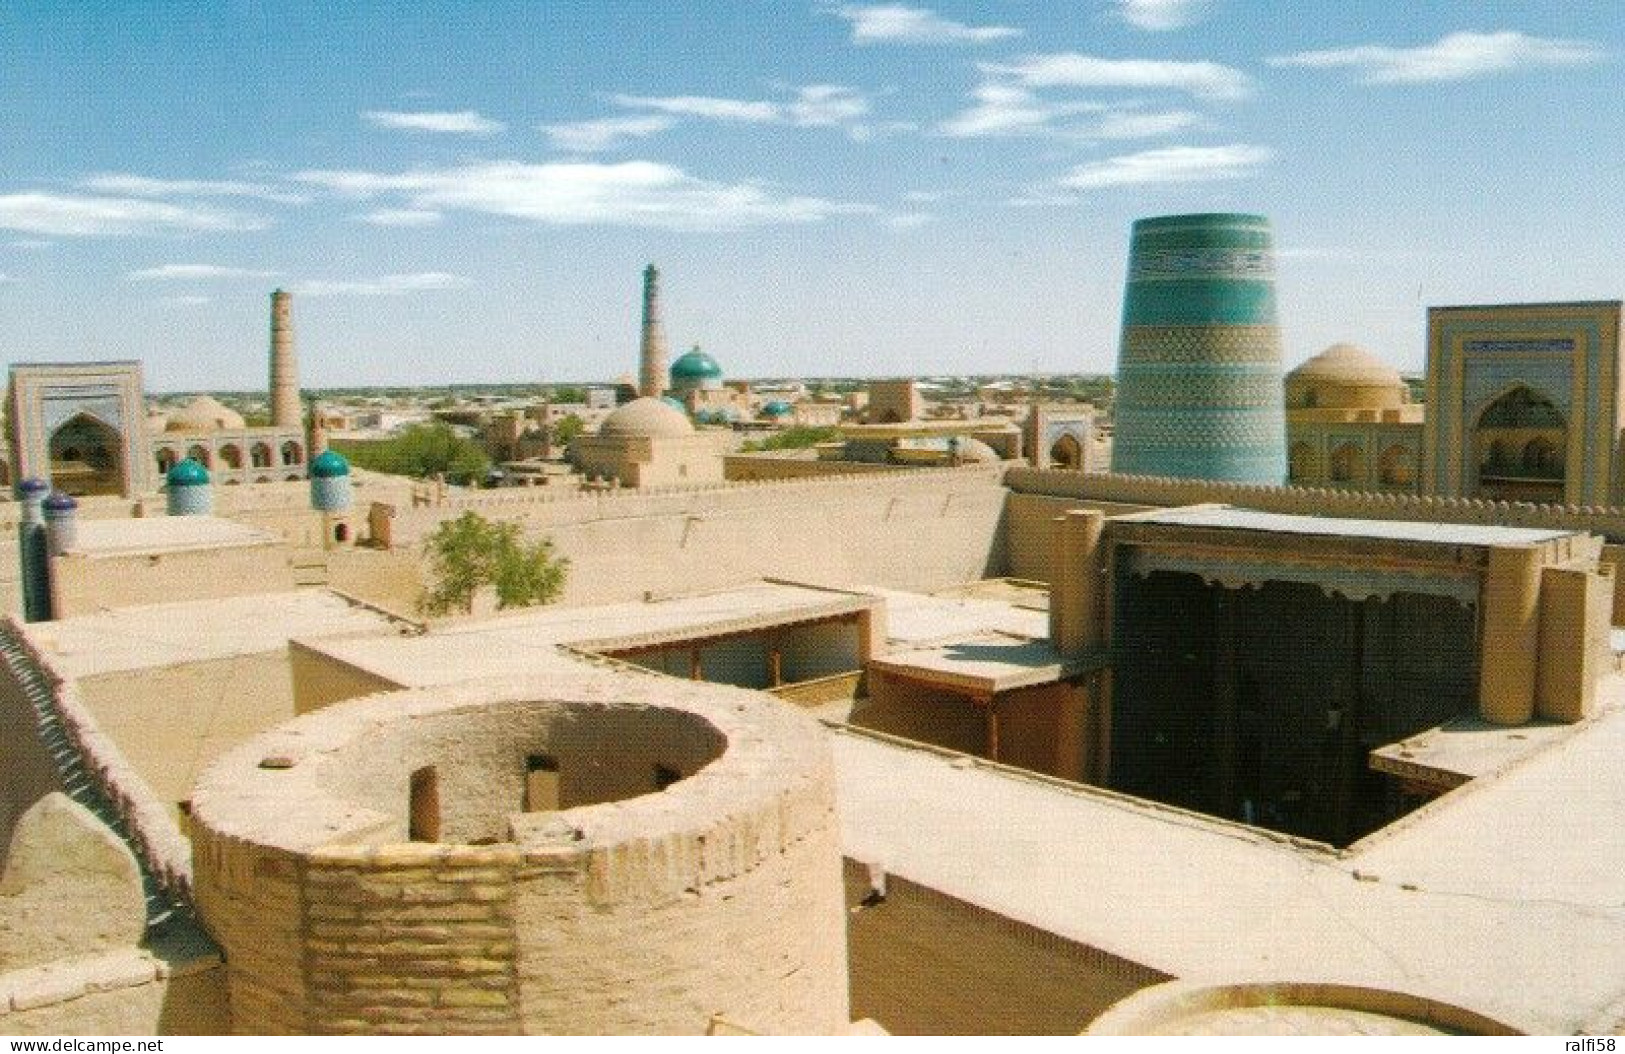 1 AK Usbekistan * Historische Altstadt Von Chiwa (Xiva) Mit Der Turm Kalta Minor (rechts) - 1990 UNESCO Weltkulturerbe * - Uzbekistan